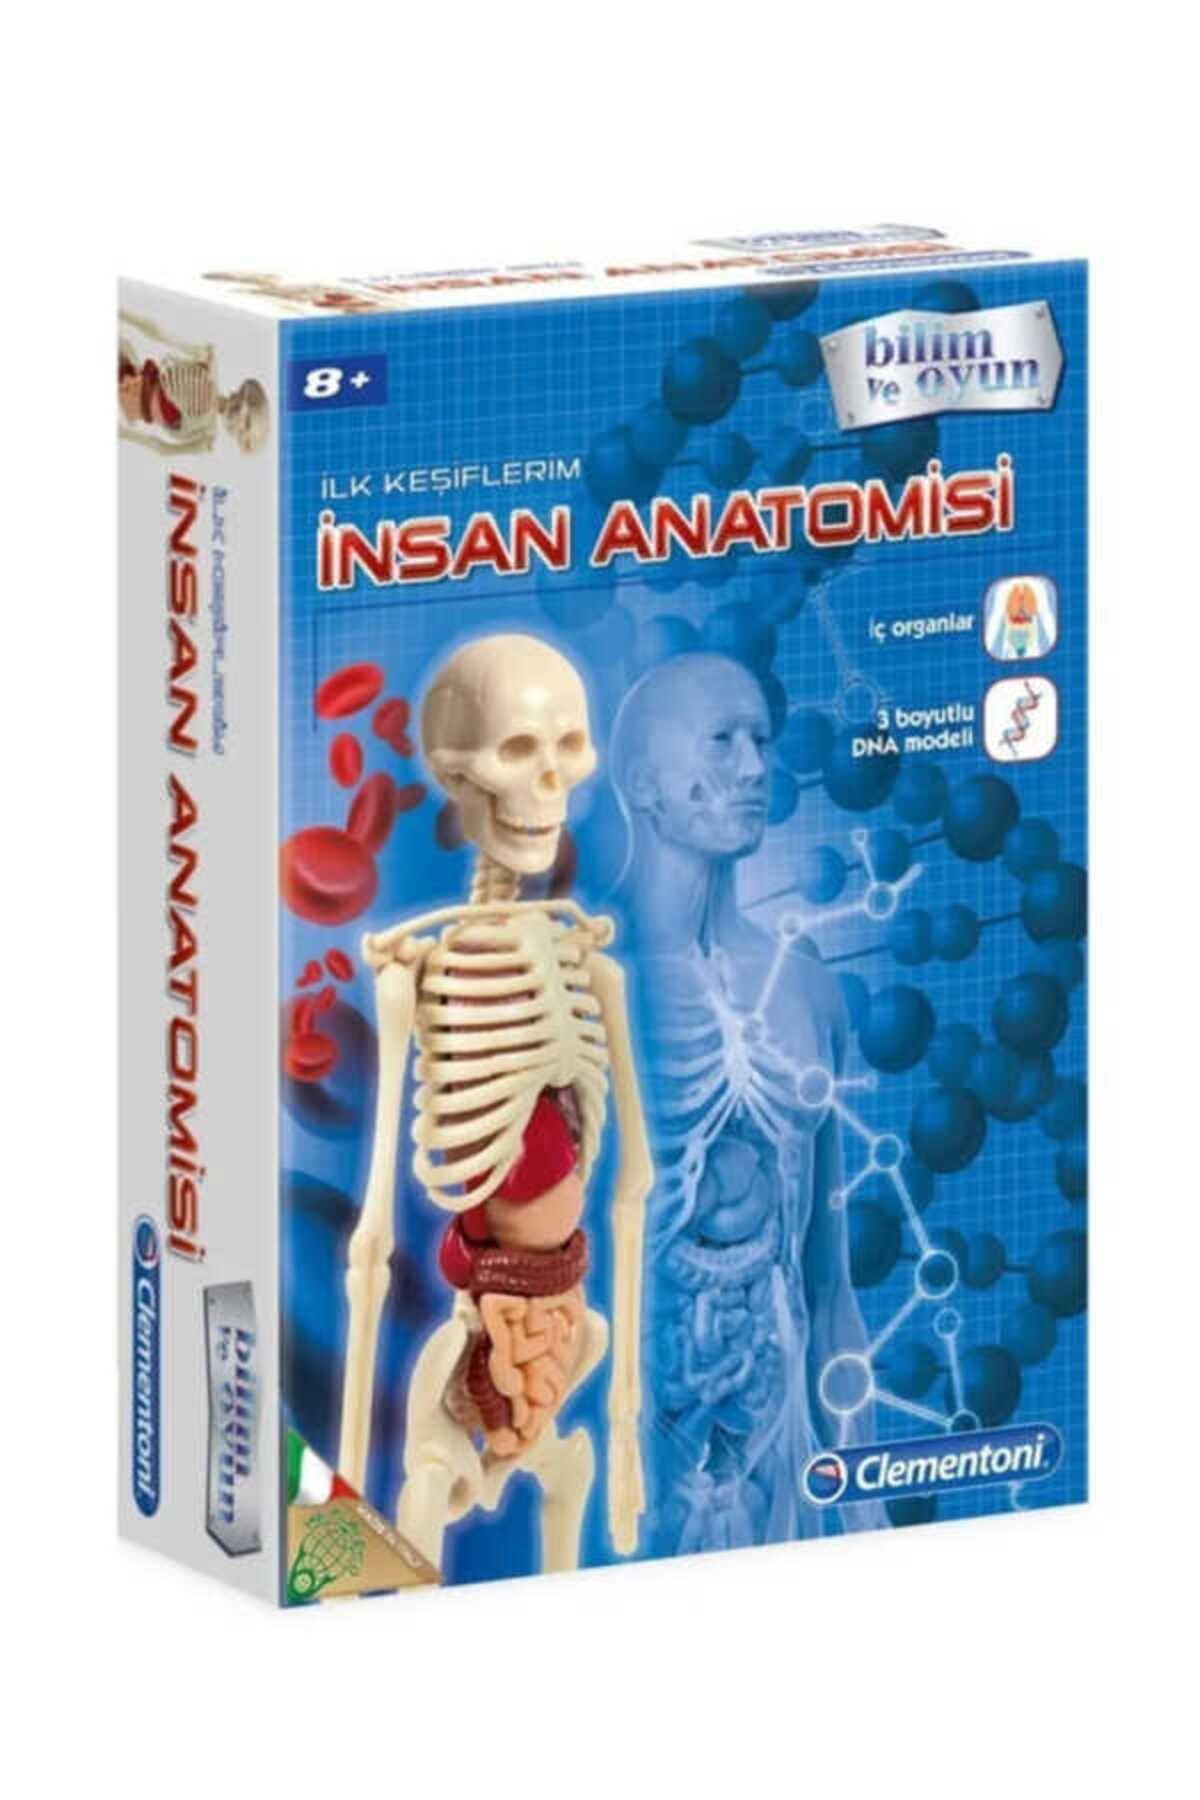 Clementoni Prıme Insan Anatomisi - Bilim Ve Oyun